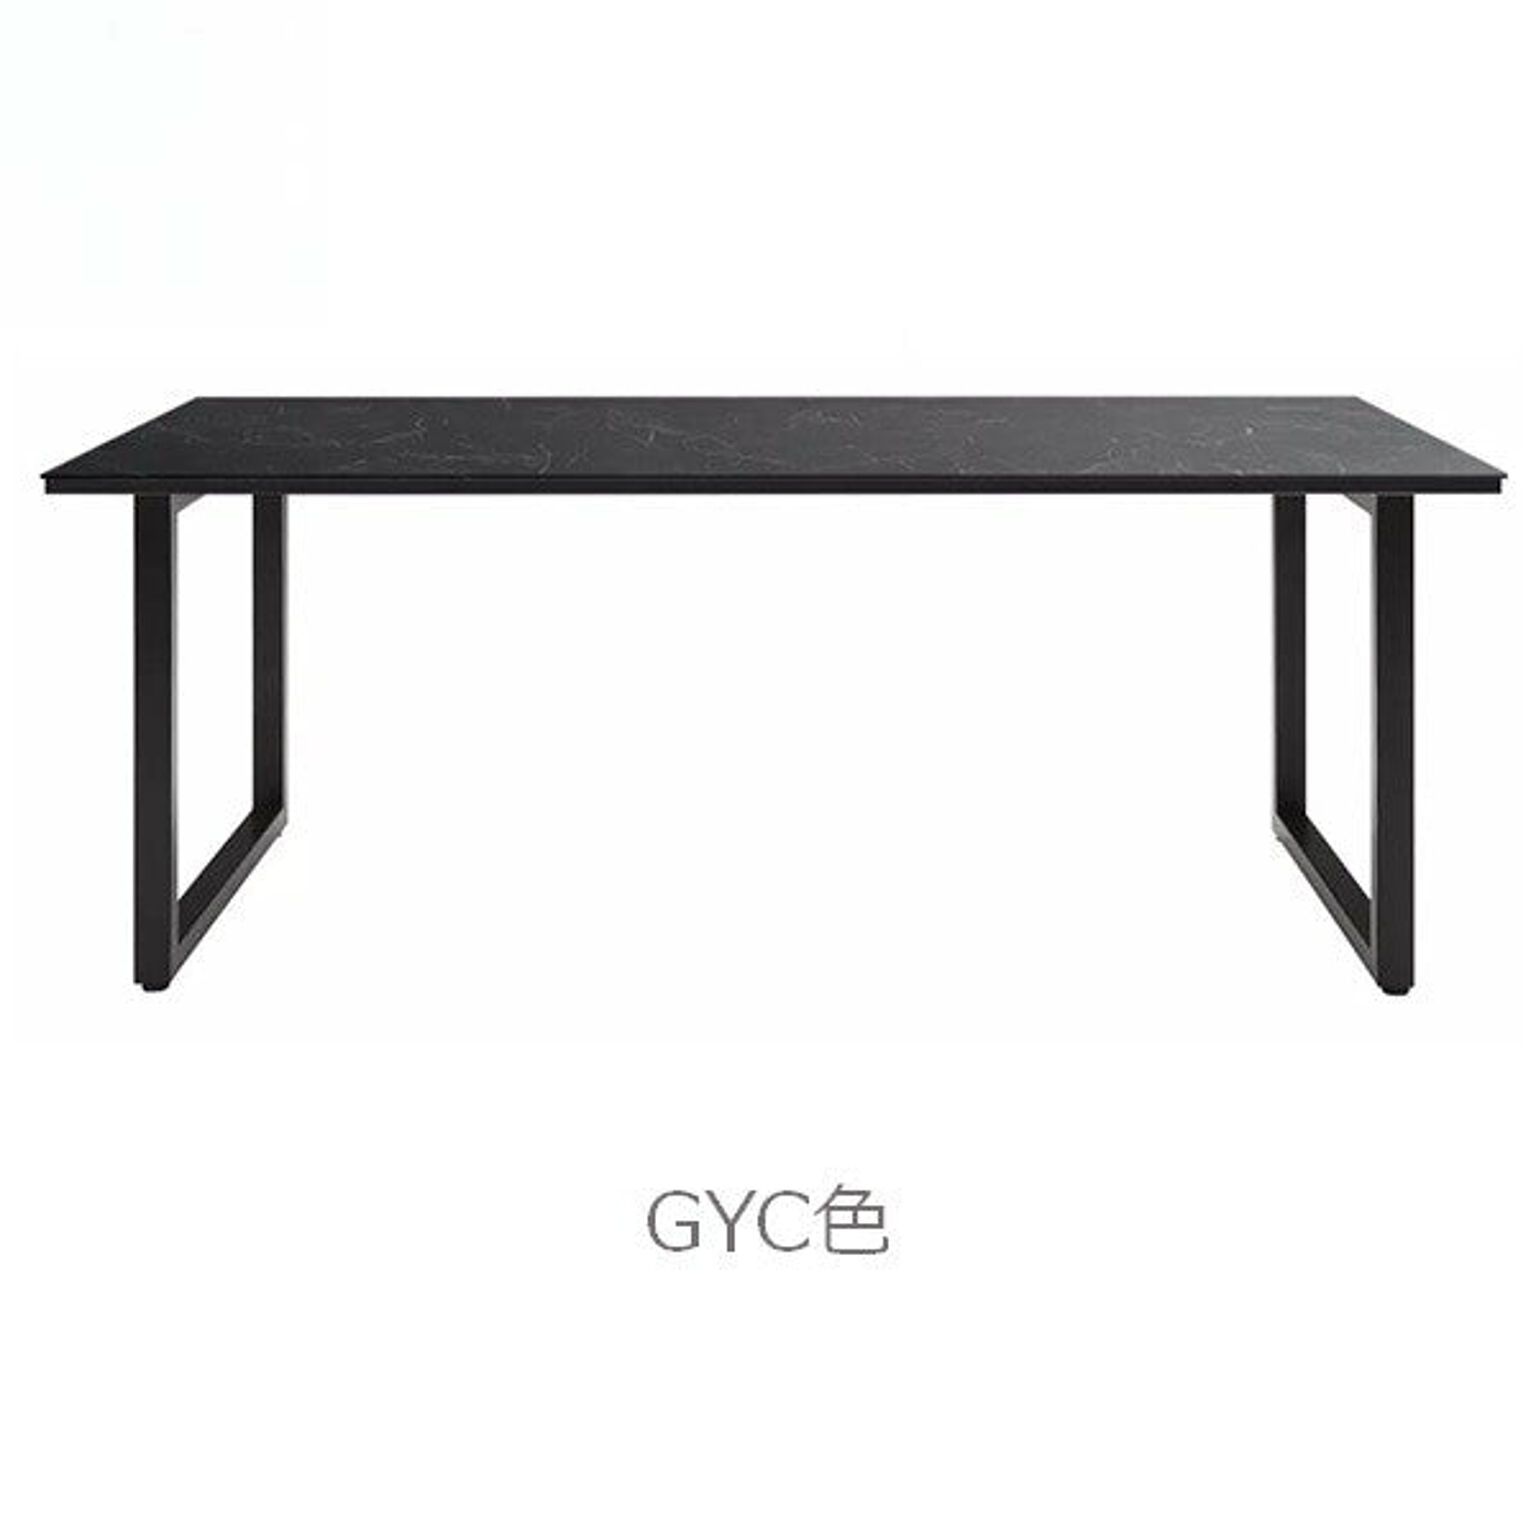 ダイニングテーブル 幅180 高さ72 セラミック天板 ブラックアイアン シンプル スッキリ デザイン 作業テーブル RAMA ラマ RMA-180